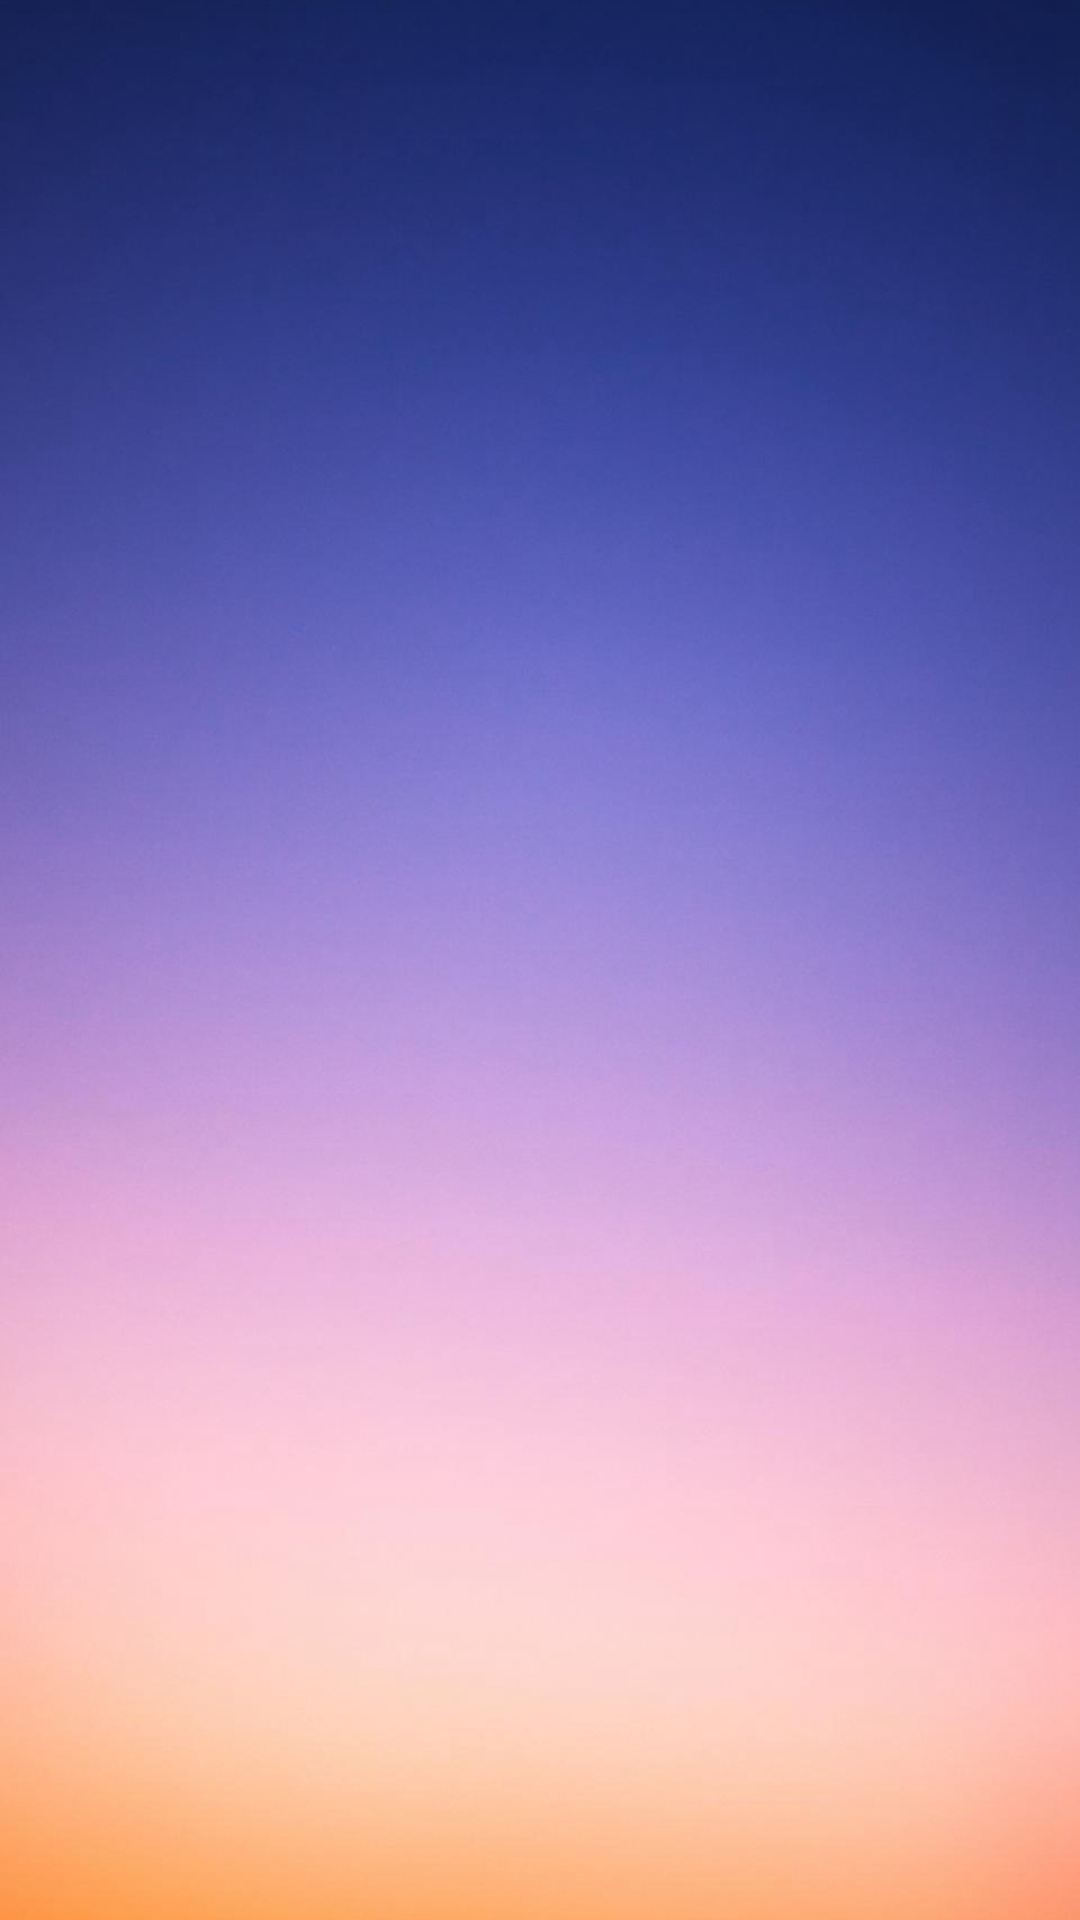 iOS8 Theme Gradation Blur mang đến cảm giác mềm mại, nhẹ nhàng tinh tế cho telefon của bạn. Hãy cùng chiêm ngưỡng bộ sưu tập hình ảnh ấn tượng và đầy tính nghệ thuật của iOS8 Theme Gradation Blur.